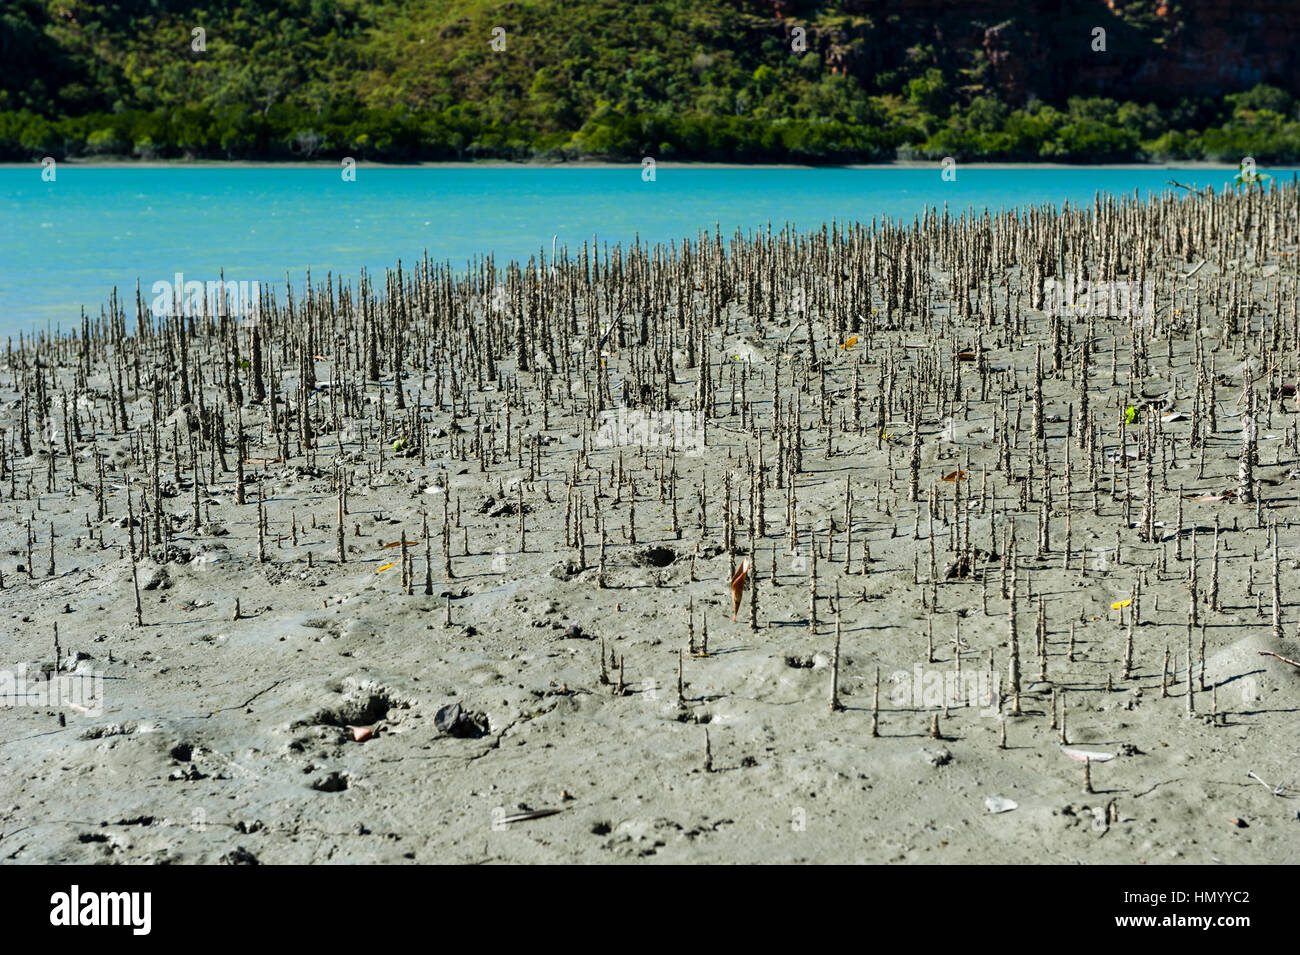 Pneumatofori sono la radice dell'antenna di sistemi che consentono di mangrovie per ottenere ossigeno come il fango in cui vivono è anaerobico. Foto Stock